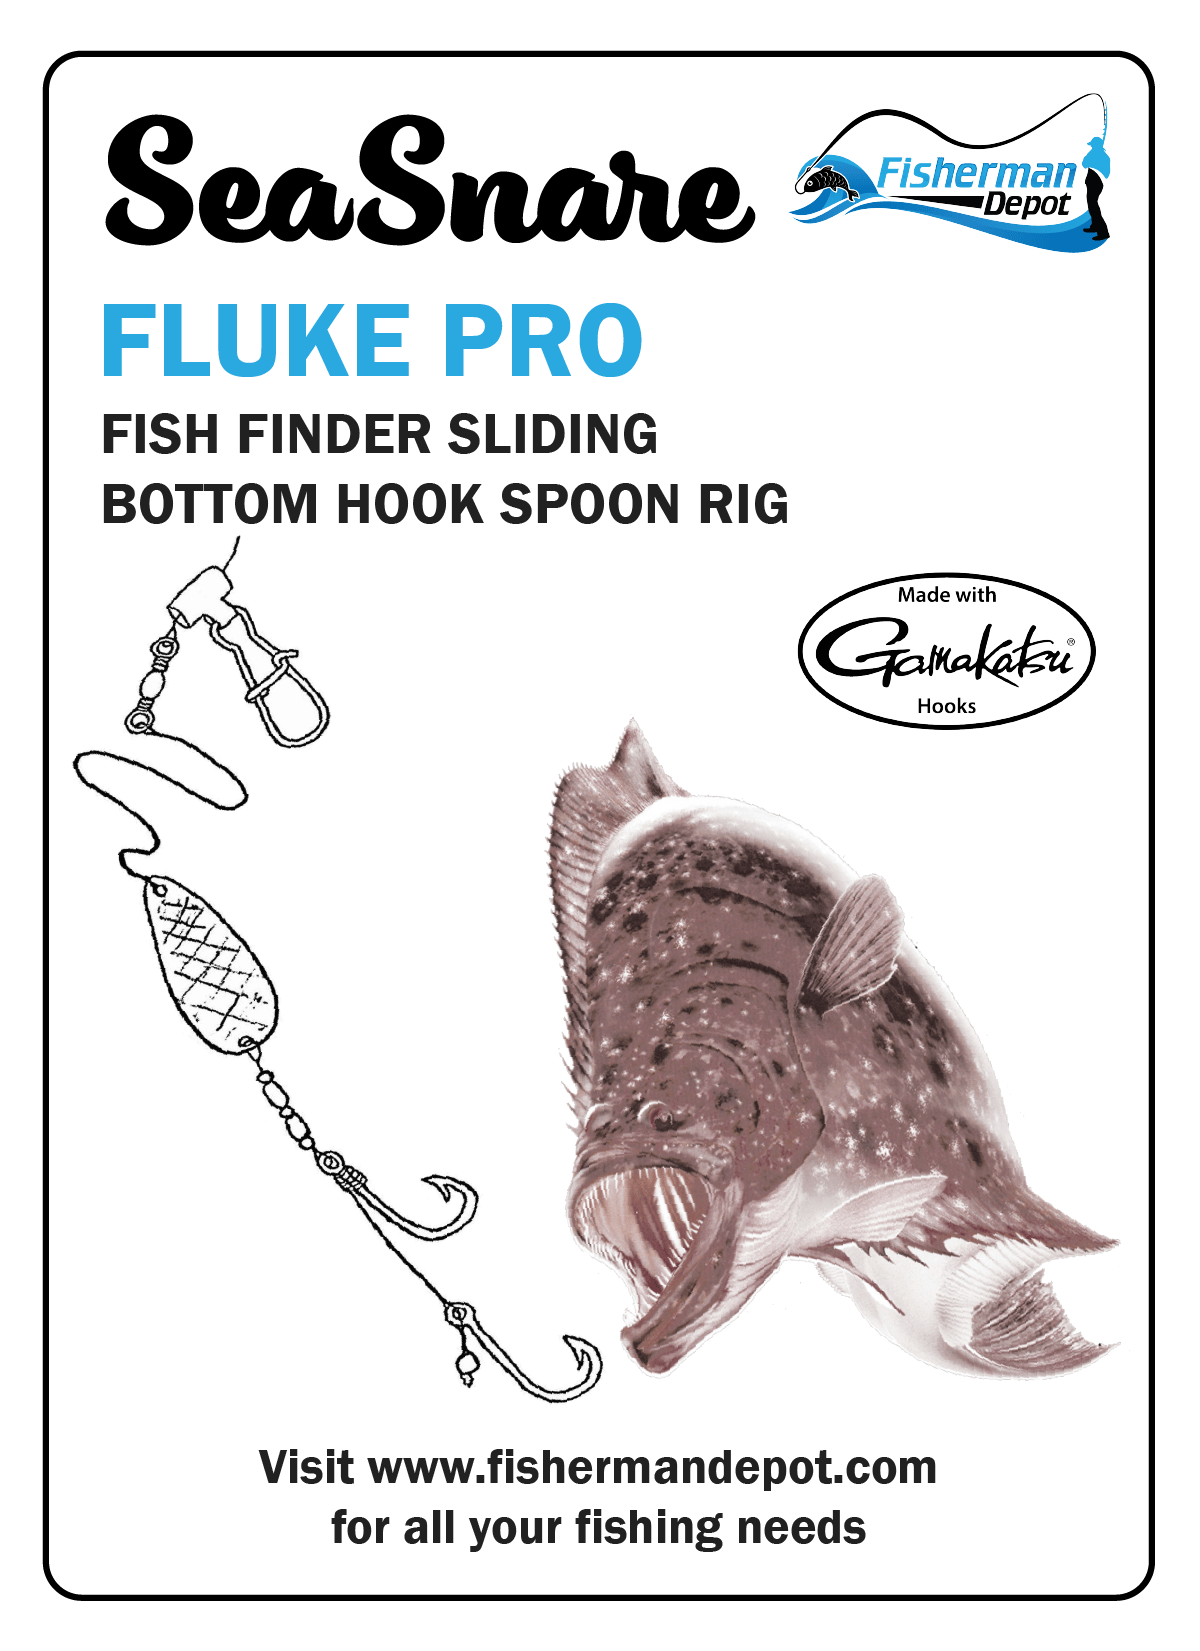 SeaSnare Fluke Pro - Original Fish Finder Sliding Bottom Hook Spoon Rig